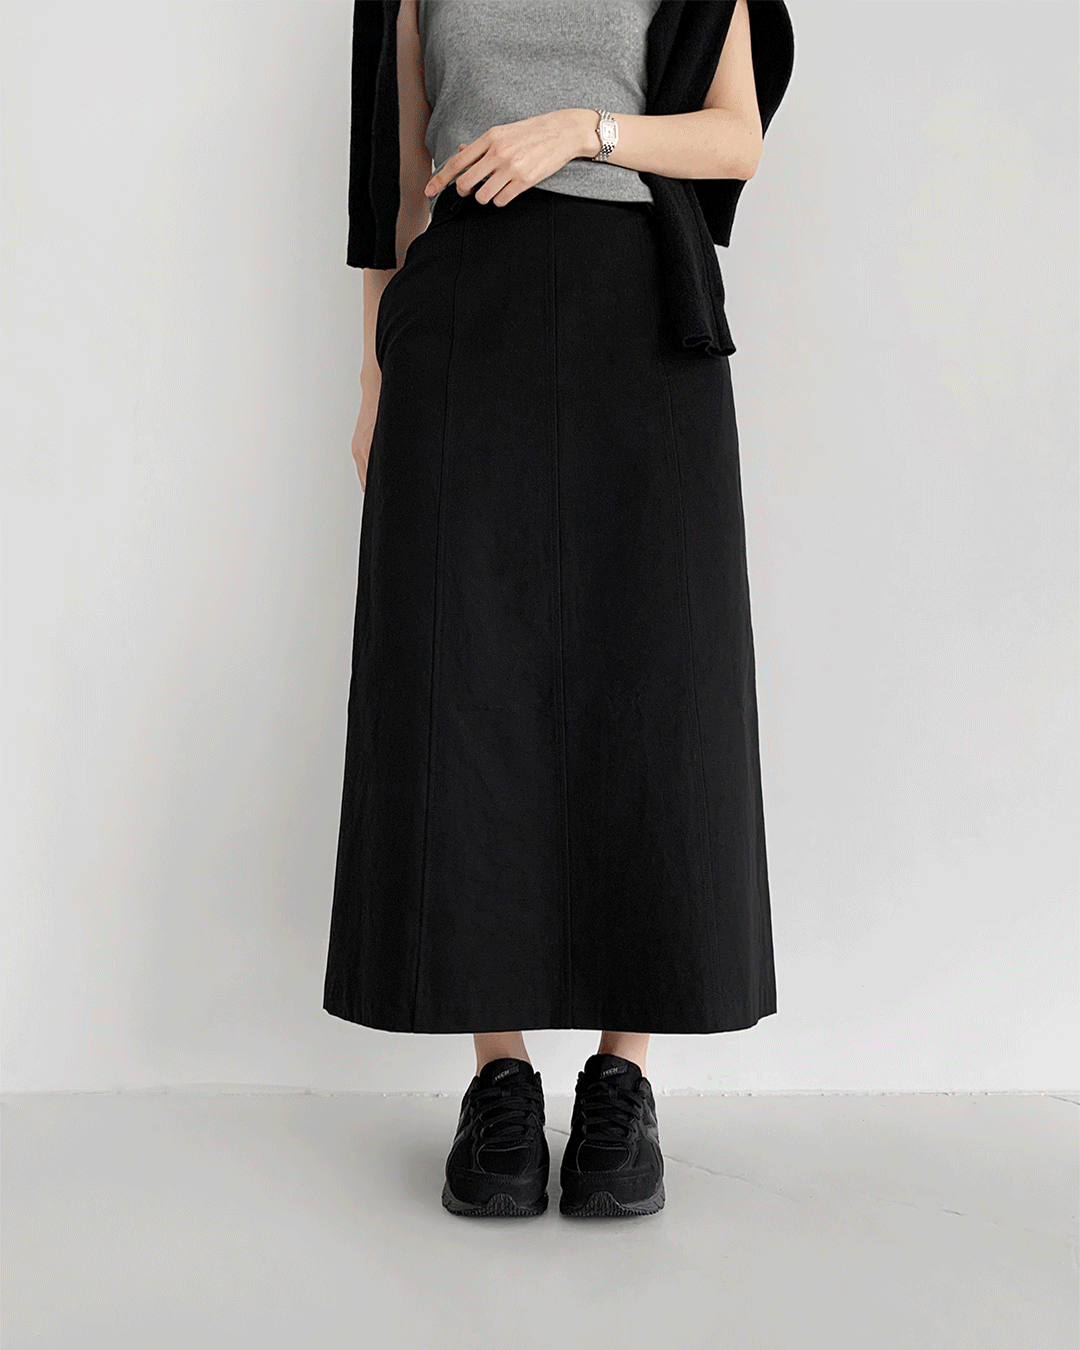 Boa skirt